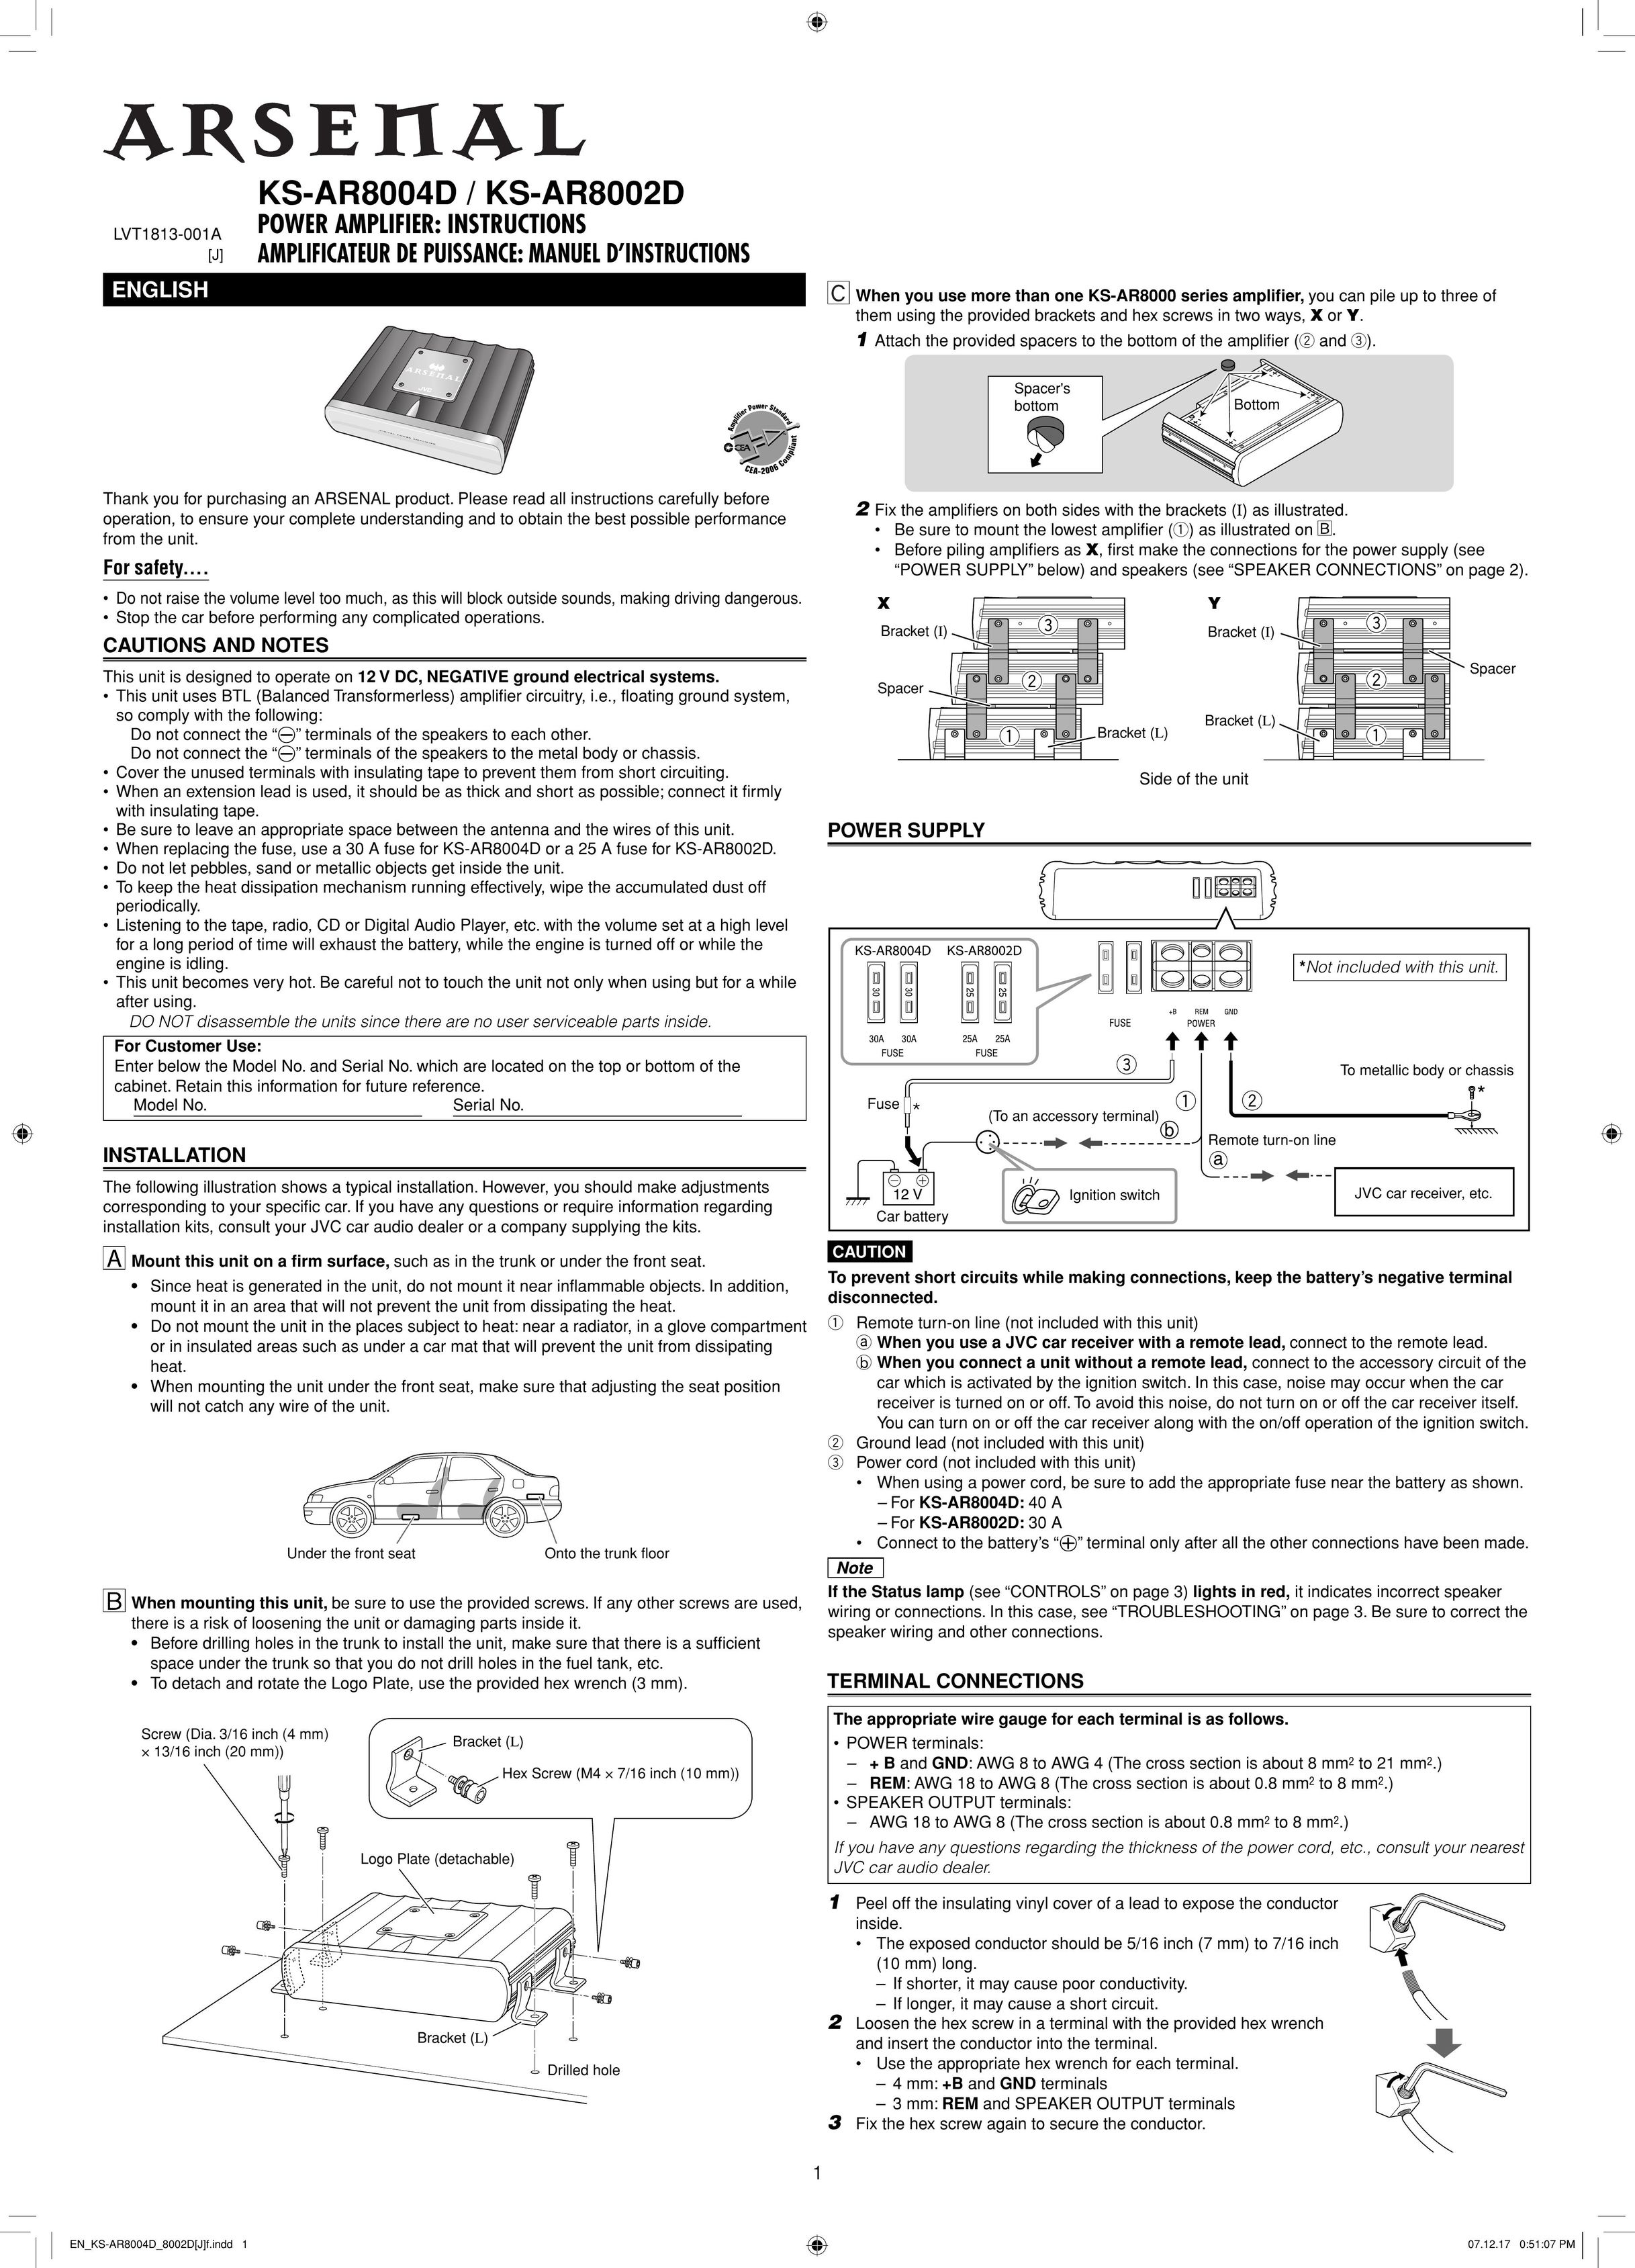 Victor Enterprise KS-AR8002D Stereo Amplifier User Manual